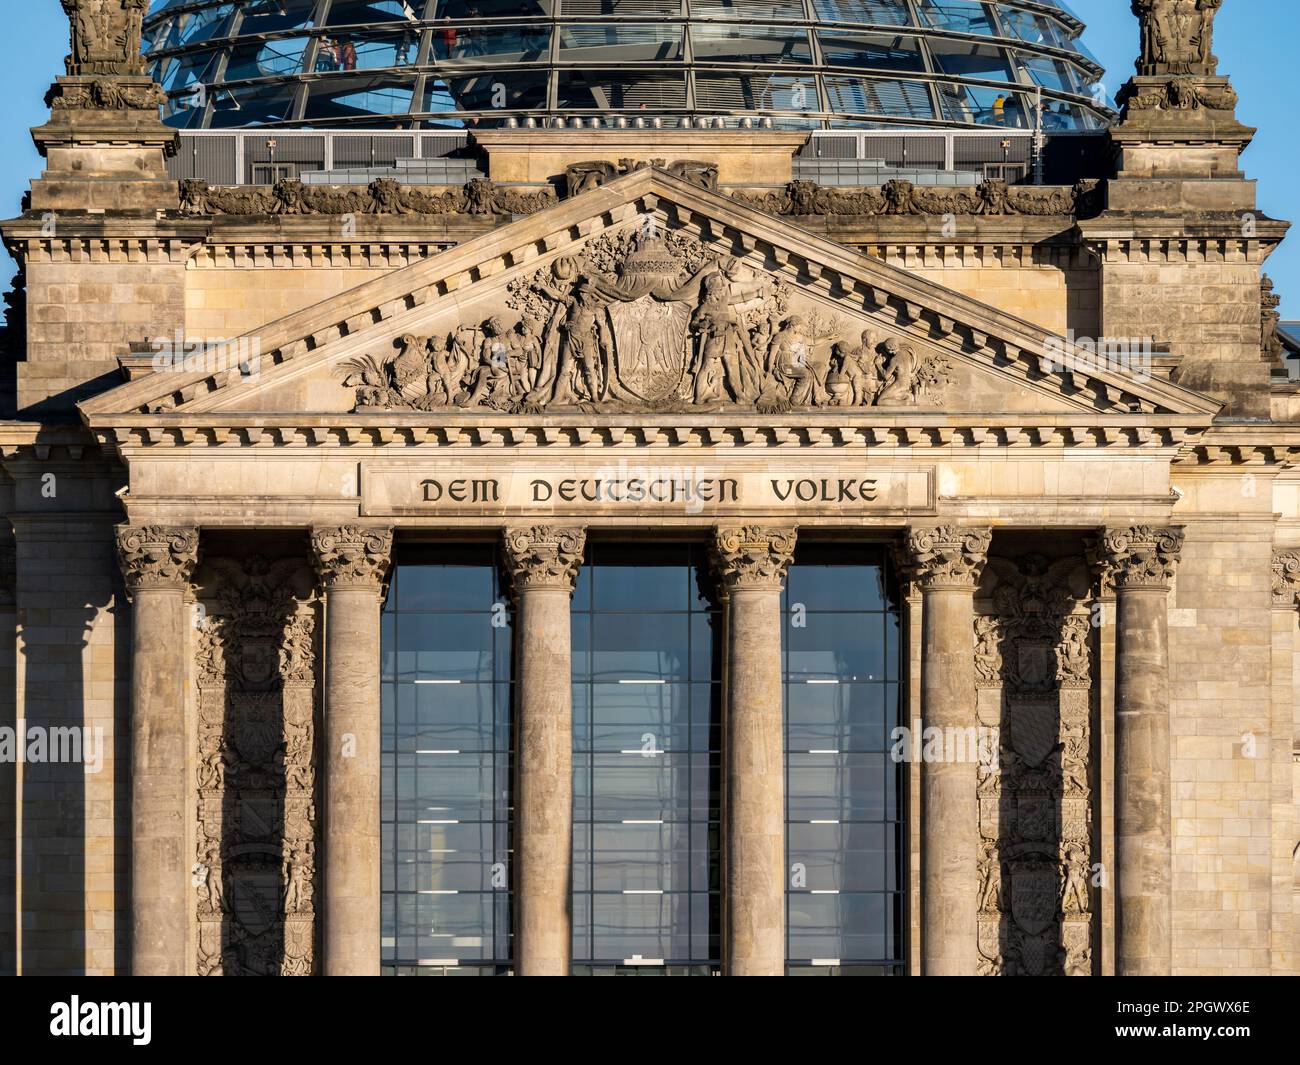 Di fronte all'edificio del Reichstag tedesco con la scritta "DEM Deutschen Volke" (per il popolo tedesco). Esterno della casa nel quartiere governativo. Foto Stock